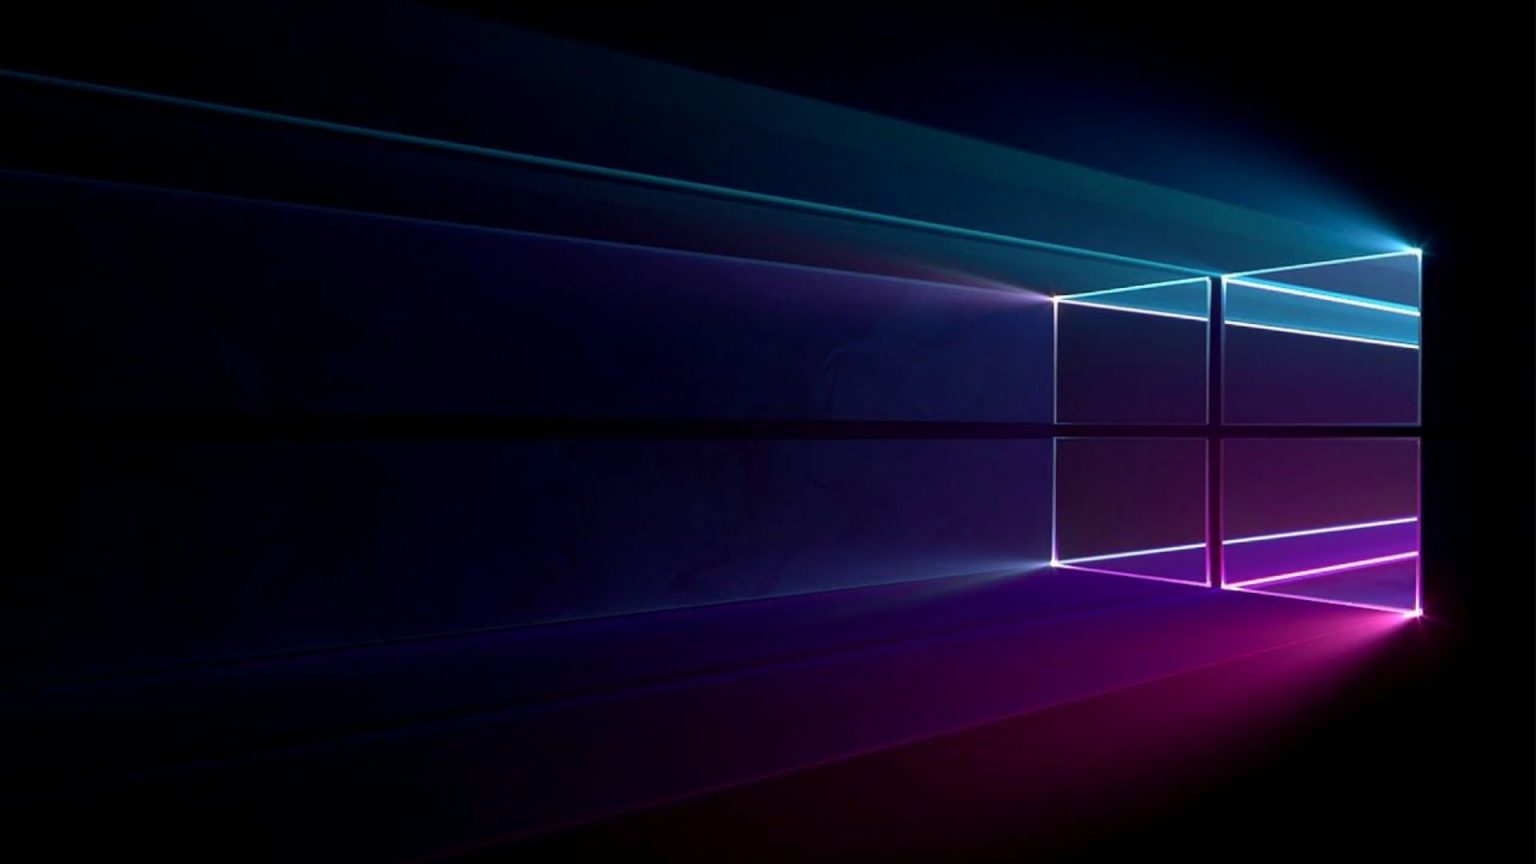 Windows 11 Wallpapers - Top 25 Best Windows 11 Backgrounds Download